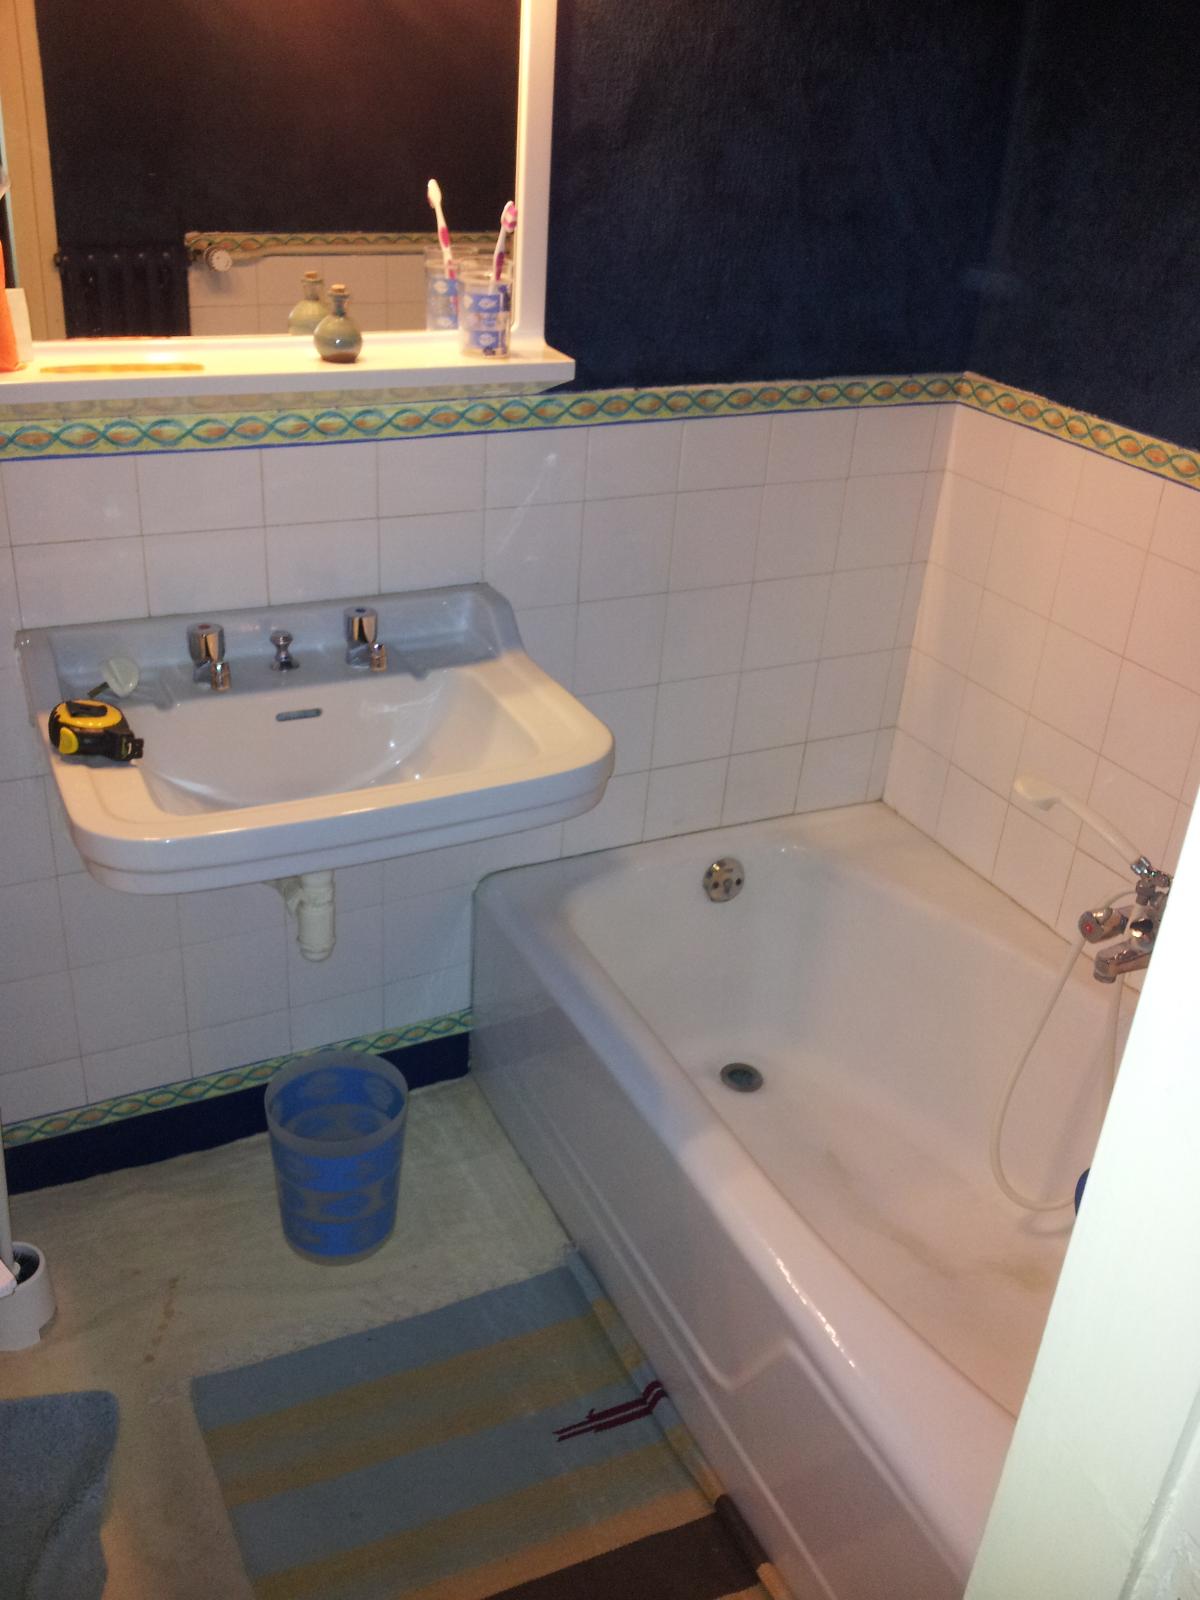 Réhabilitation salle de bain (avant) - votre plombier GIANI  (14)